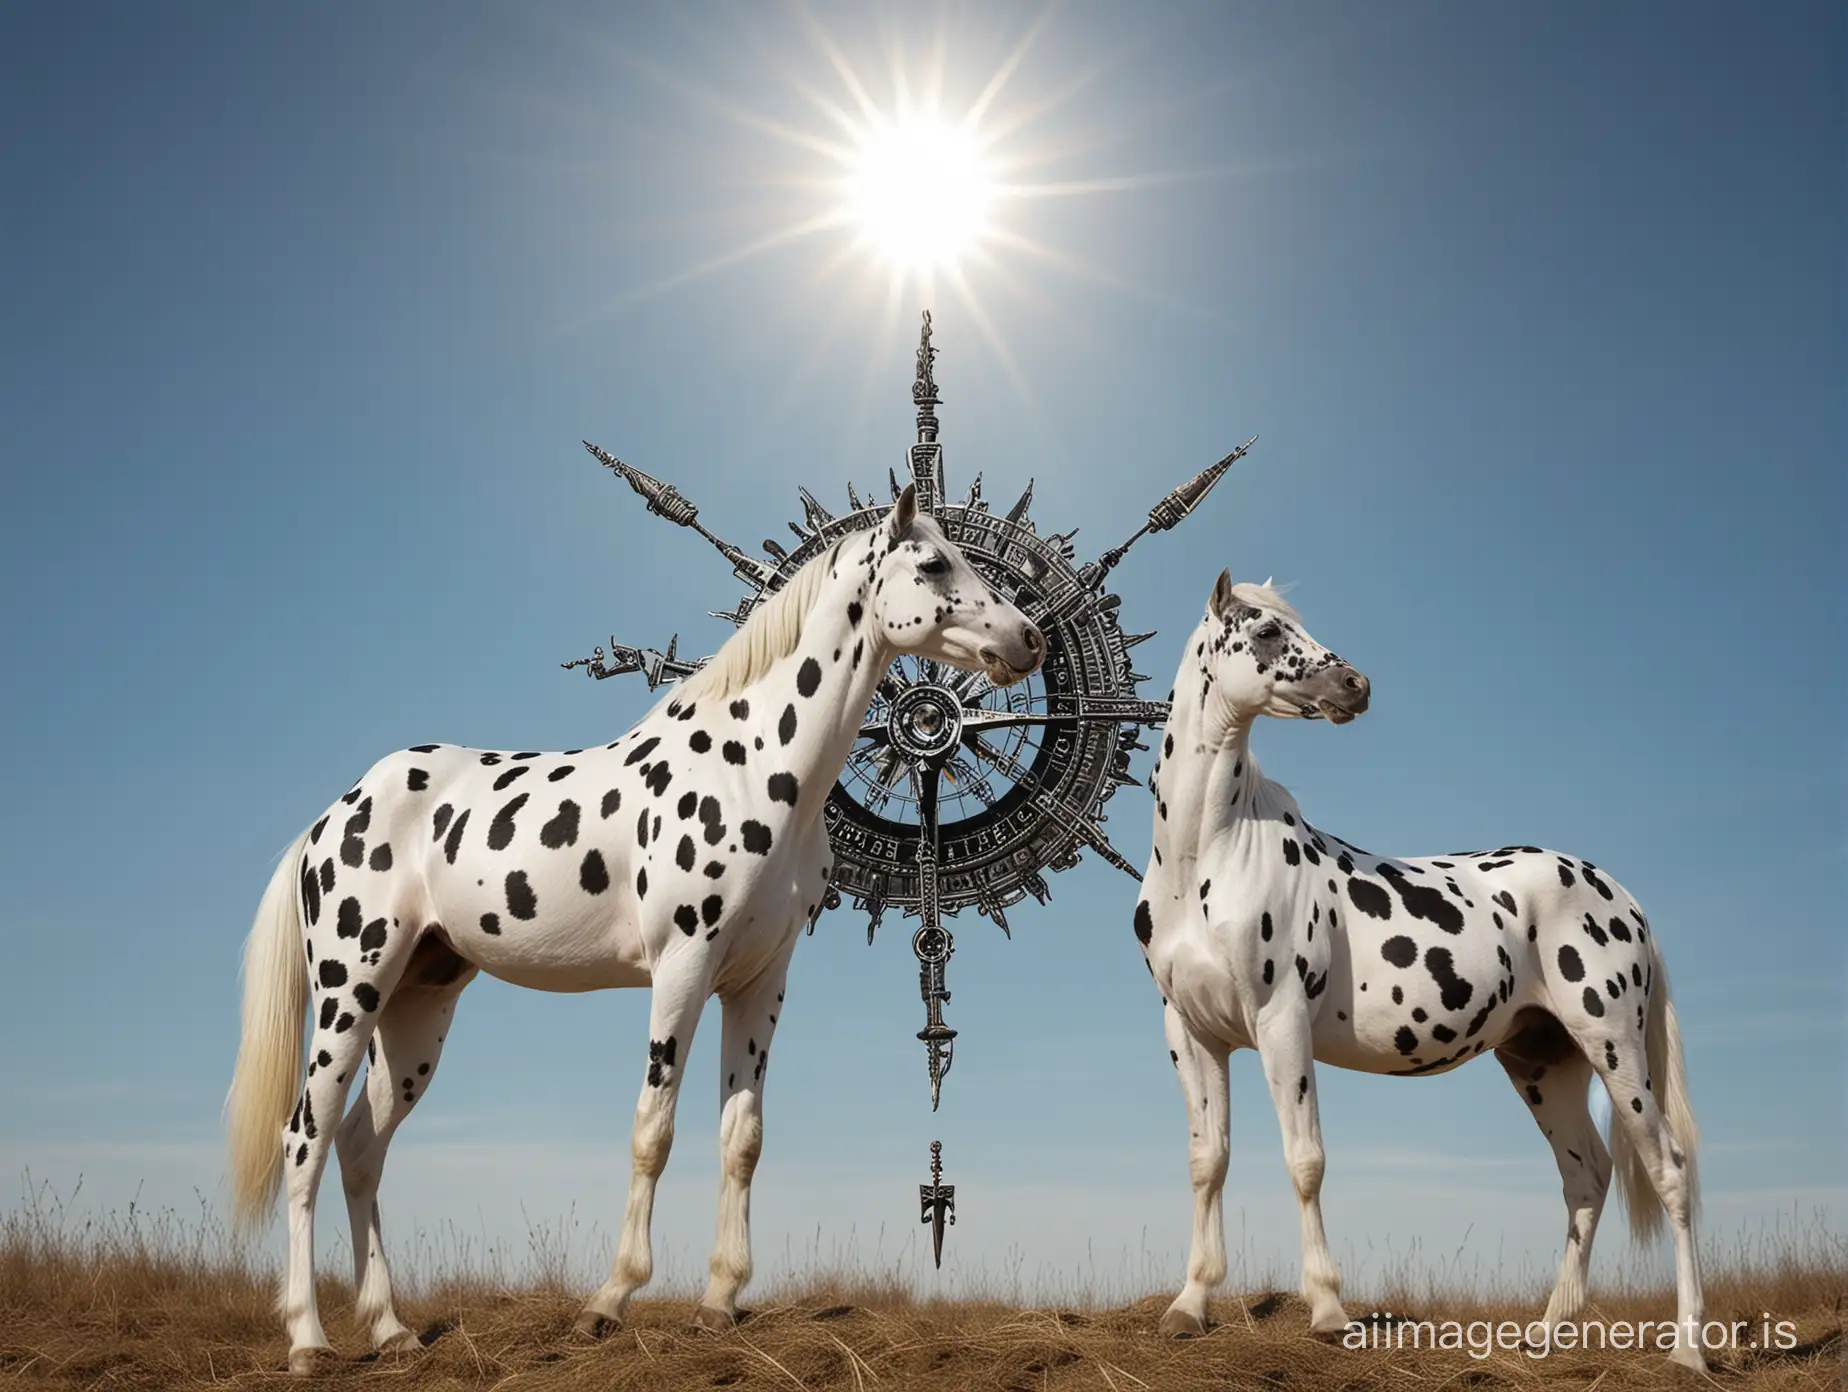 Dalmatian-Knabstrupper-Horses-Under-a-Sunlit-Blue-Sky-with-Compass